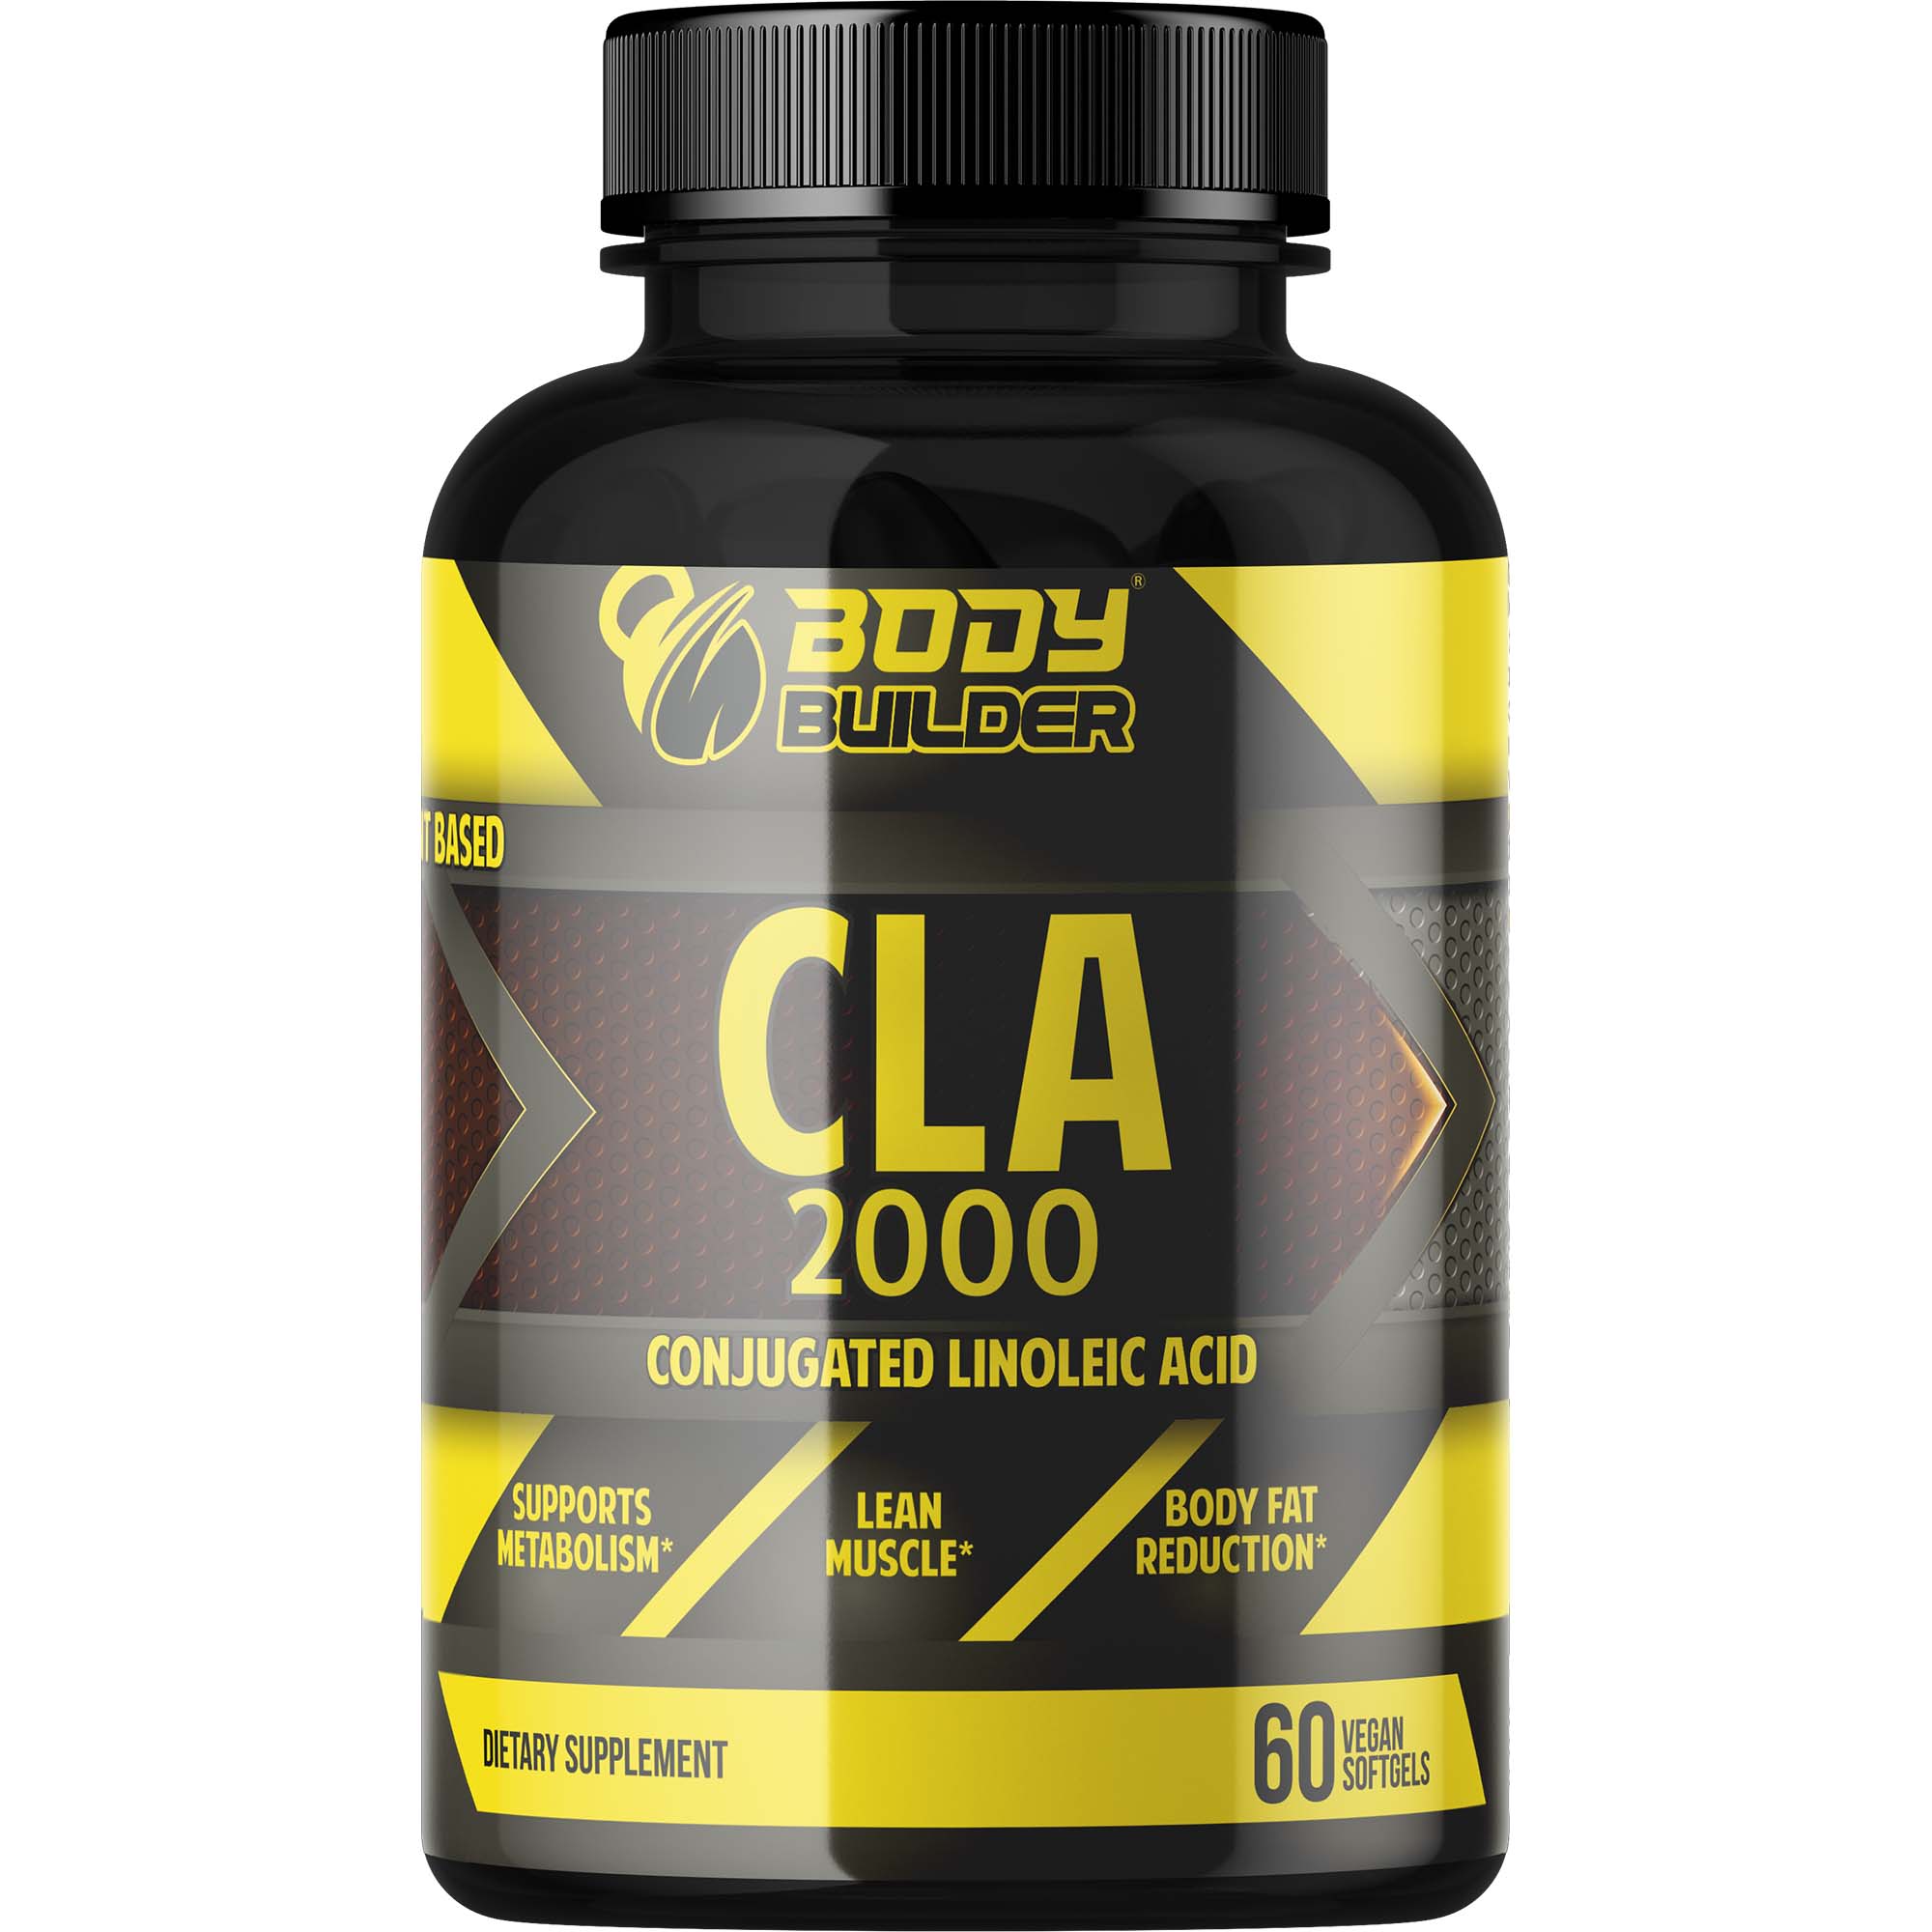 CLA 2000 